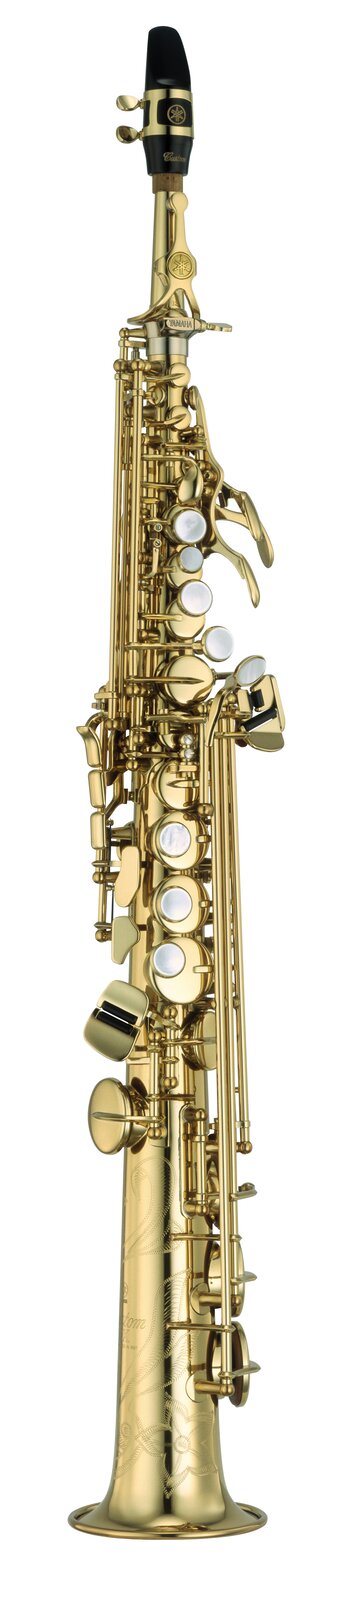 Ilustracja przedstawia saksofon sopranowy. Na zdjęciu ukazany jest podłużny instrument w kolorze złotym, w kształcie rury rozszerzonej na końcu z czarnym ustnikiem oraz metalowymi klapkami.